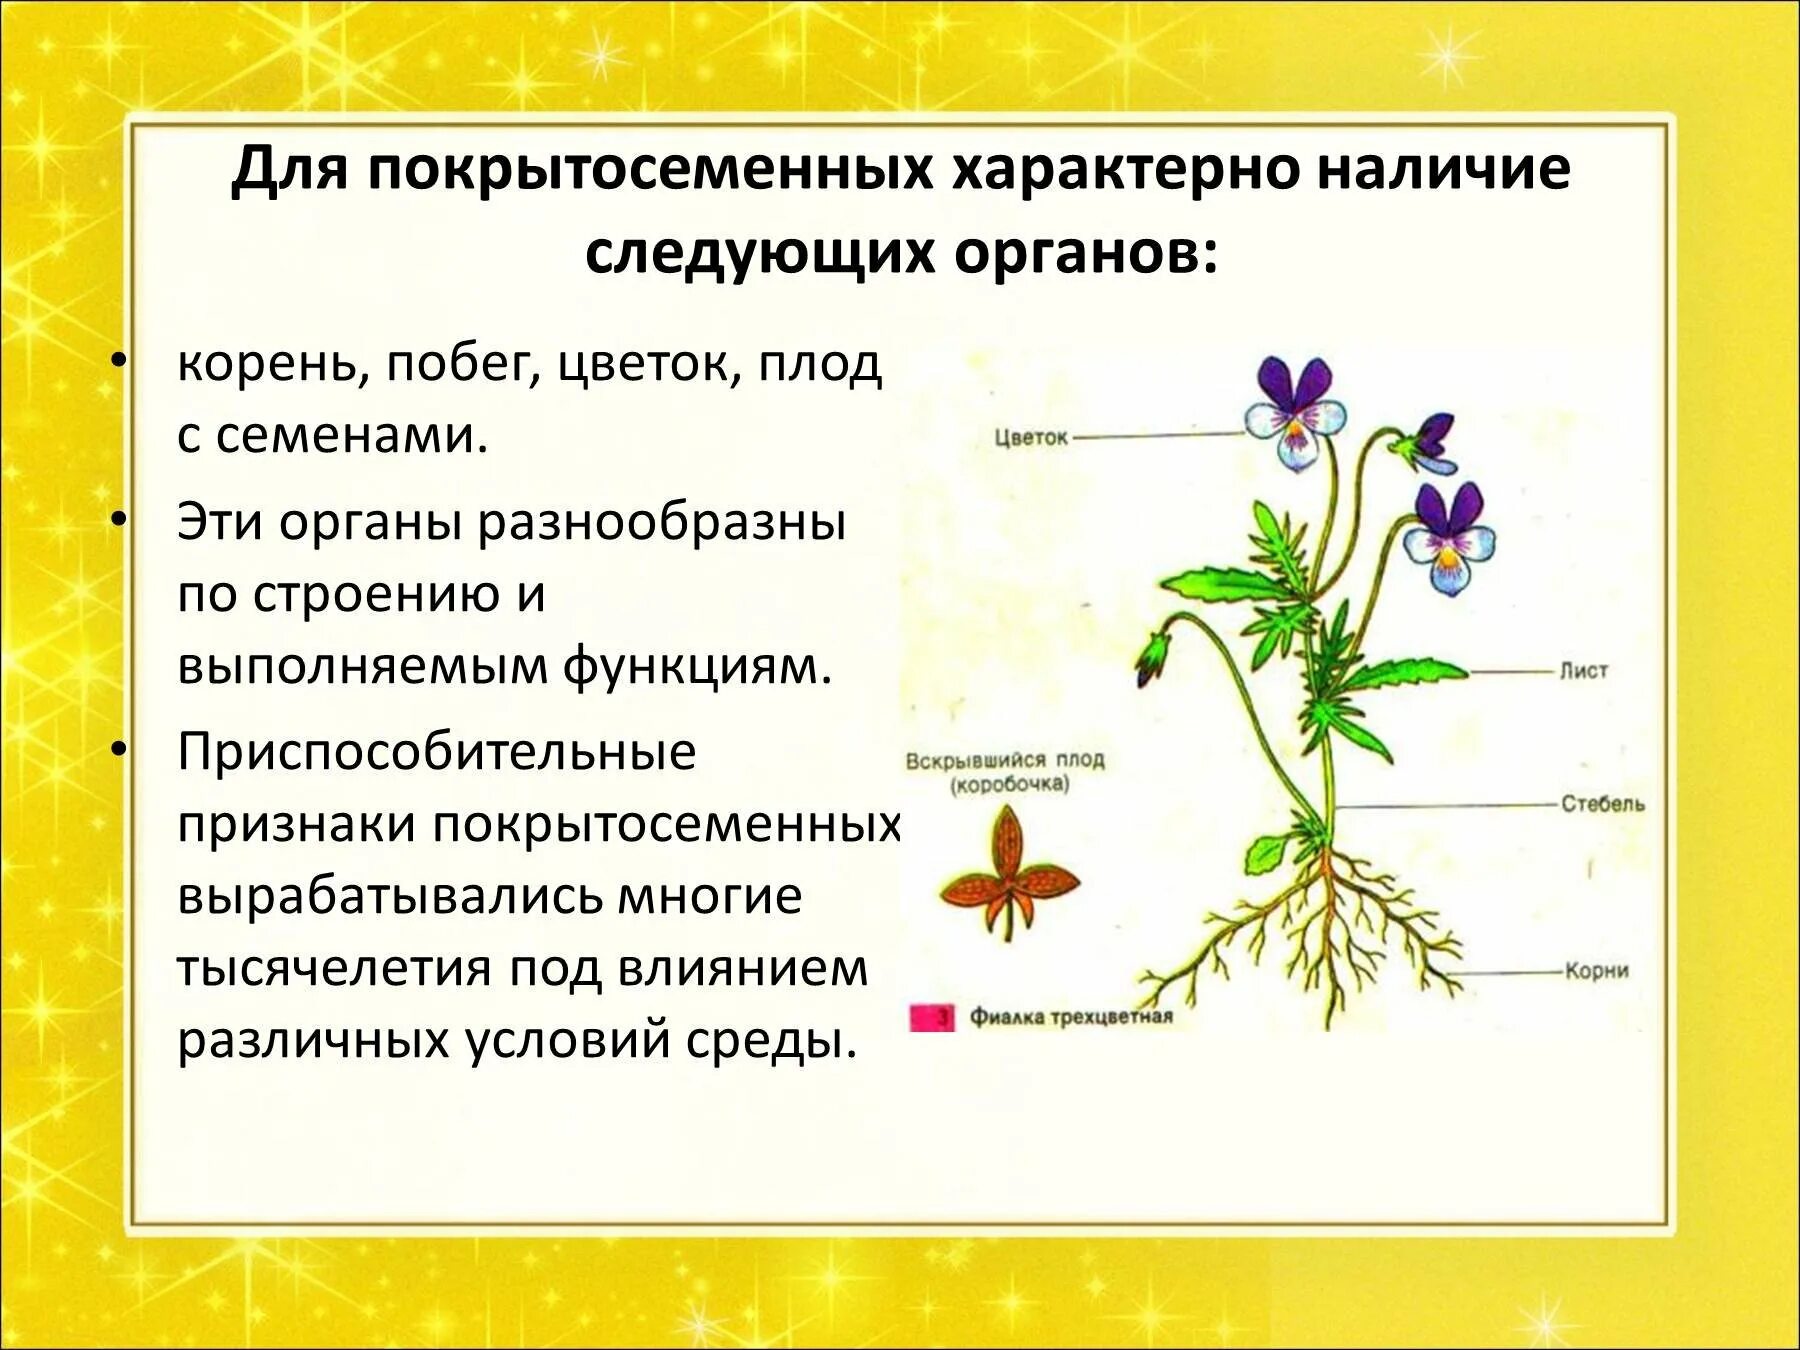 Наличие функции характерно для. Покрытосеменные цветковые растения строение. Строение цветковых покрытосеменных растений. Корневая система покрытосеменных растений. Особенности строения покрытосеменных растений.